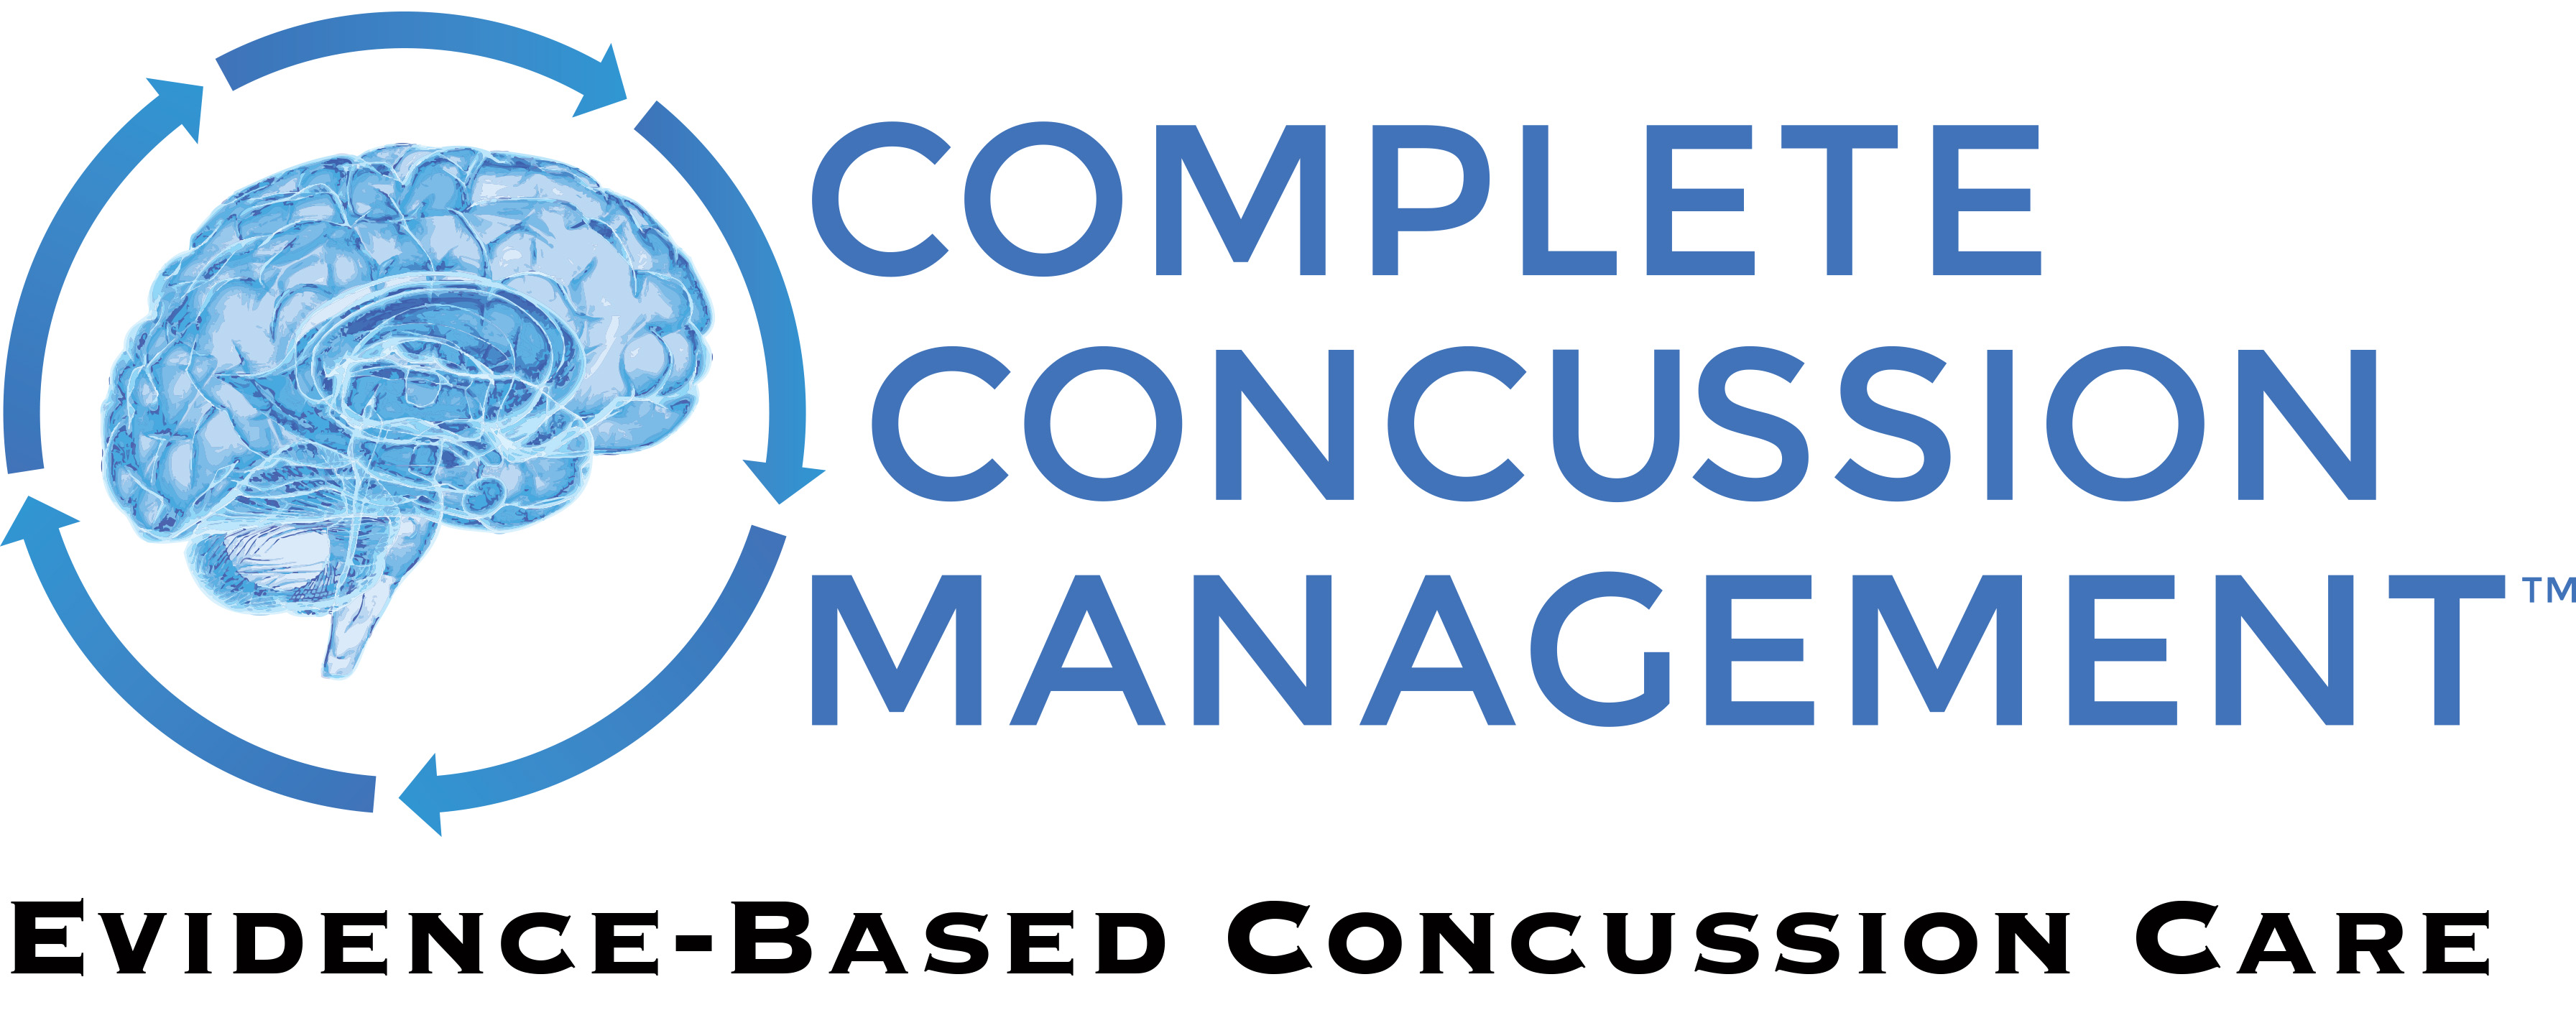 Complete Concussion Management